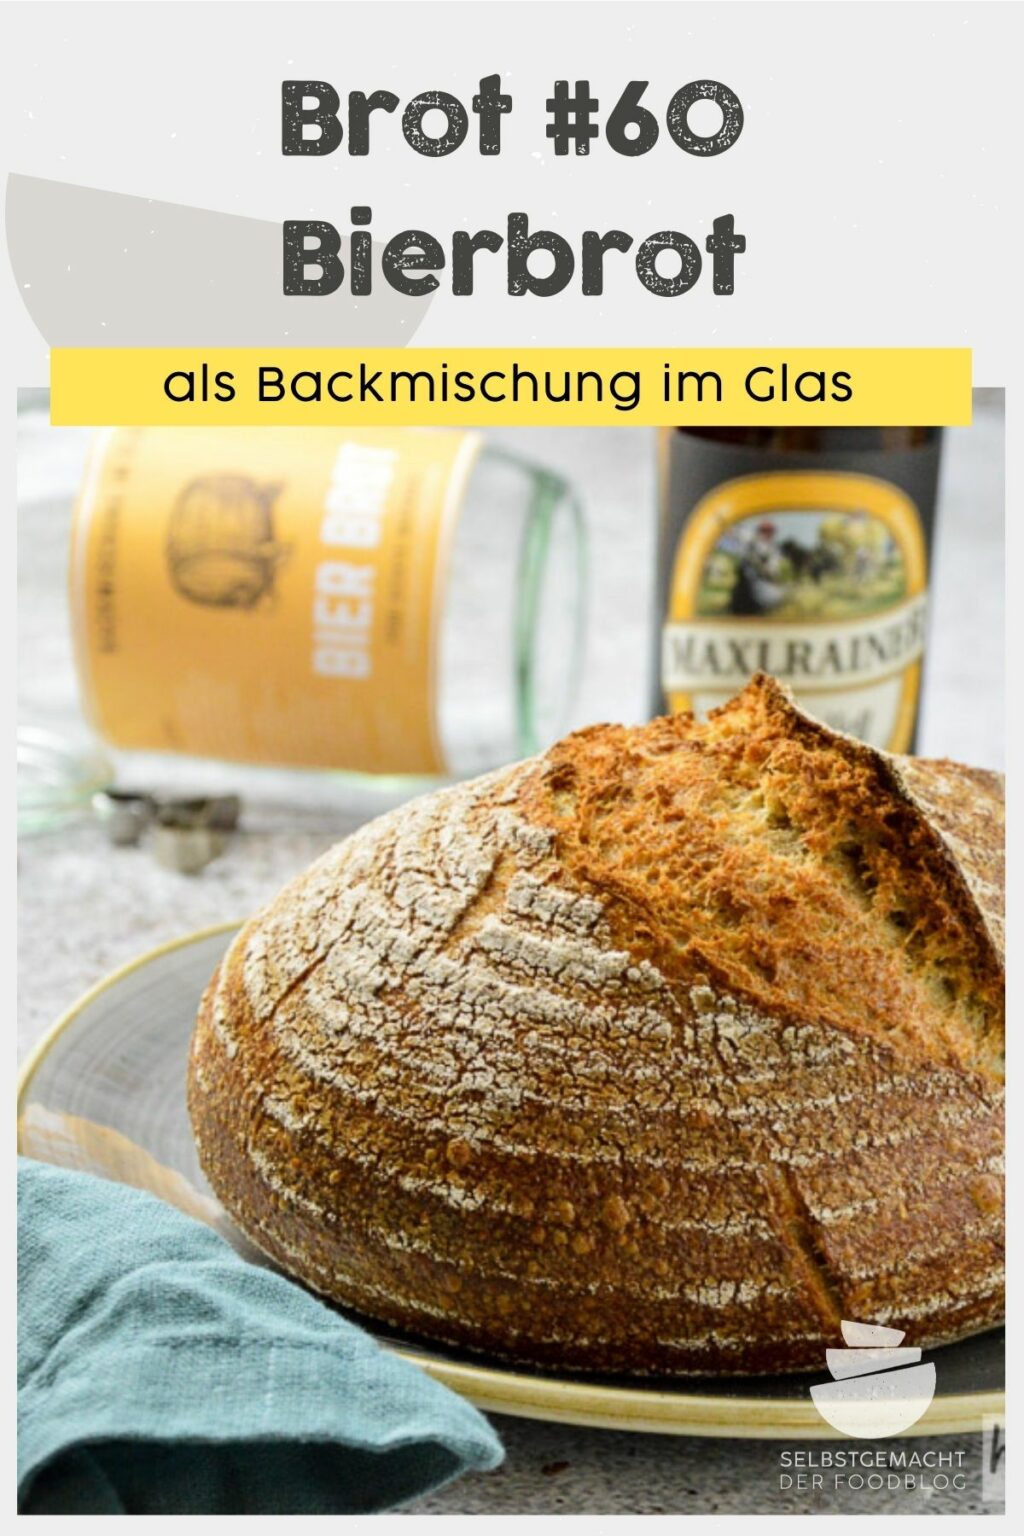 Brot #60 - Bierbrot als Backmischung im Glas - Selbstgemacht - Der Foodblog